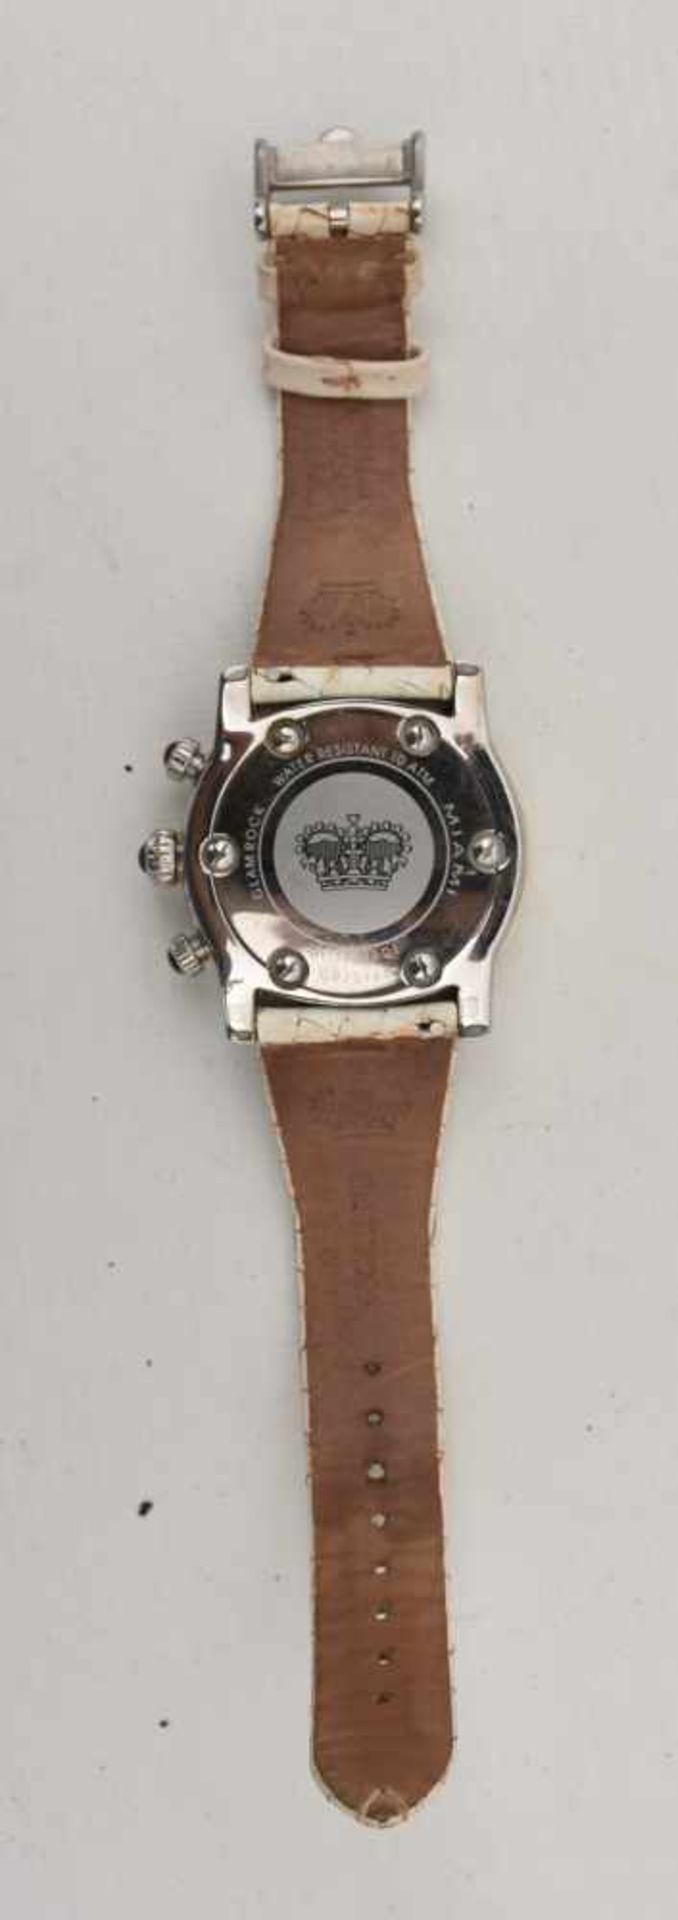 GLAM ROCK DAMENUHR WEISS, Edelstahl/Leder, um 2000 Quartz Damen-Armbanduhr "Glam Rock". weißes - Bild 5 aus 5